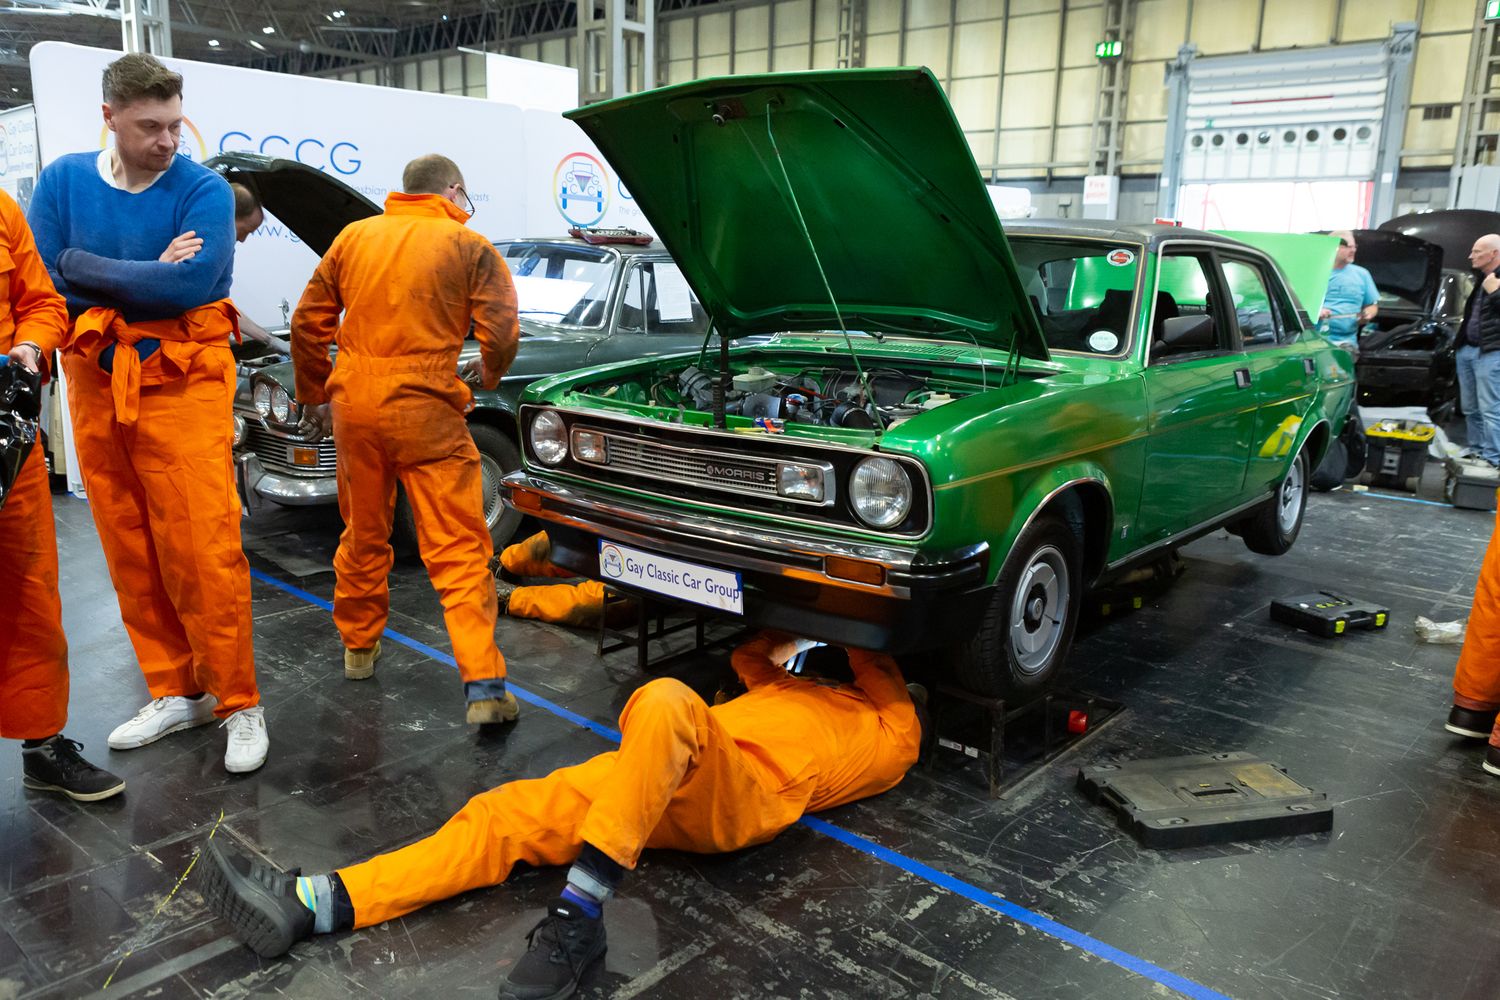 Practical Classics Classic Car & Restoration Show